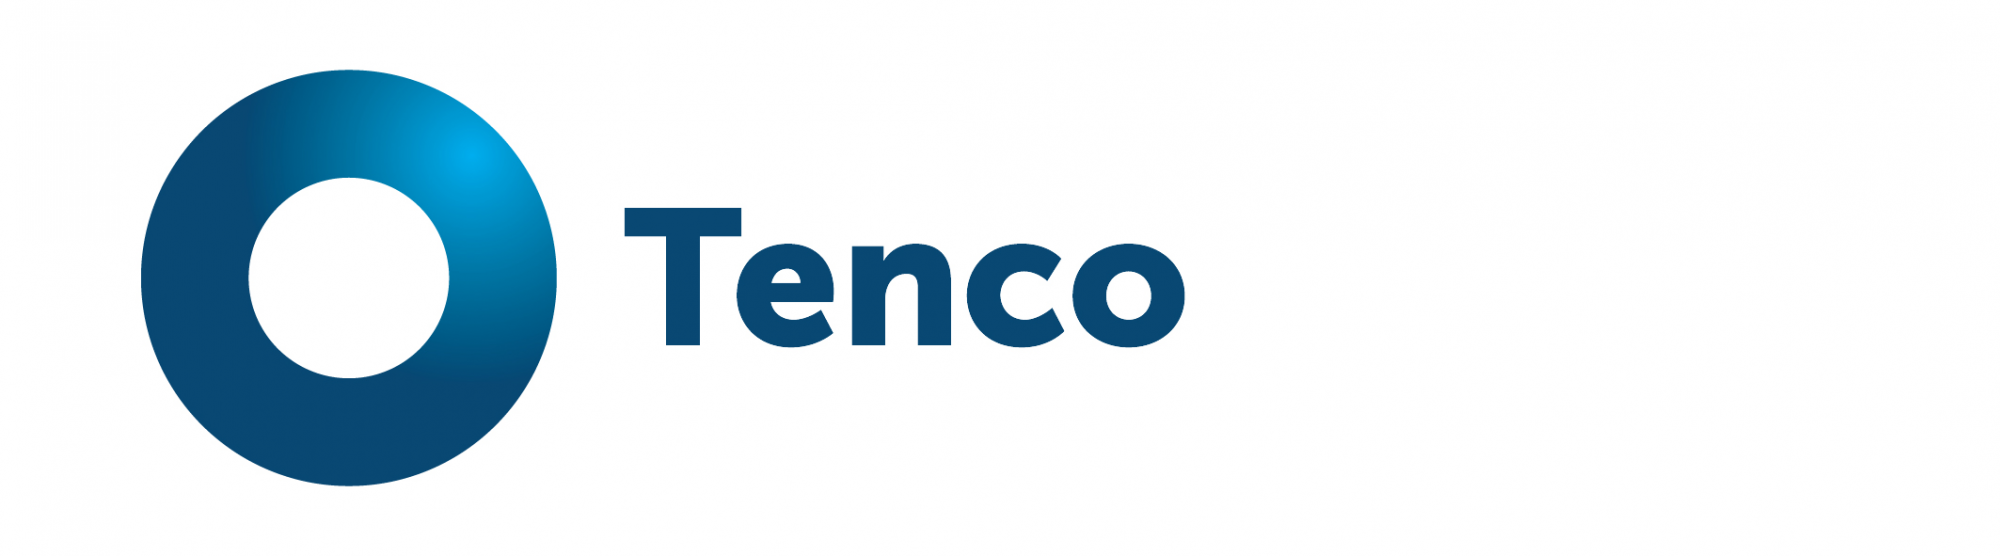 TENCO logo